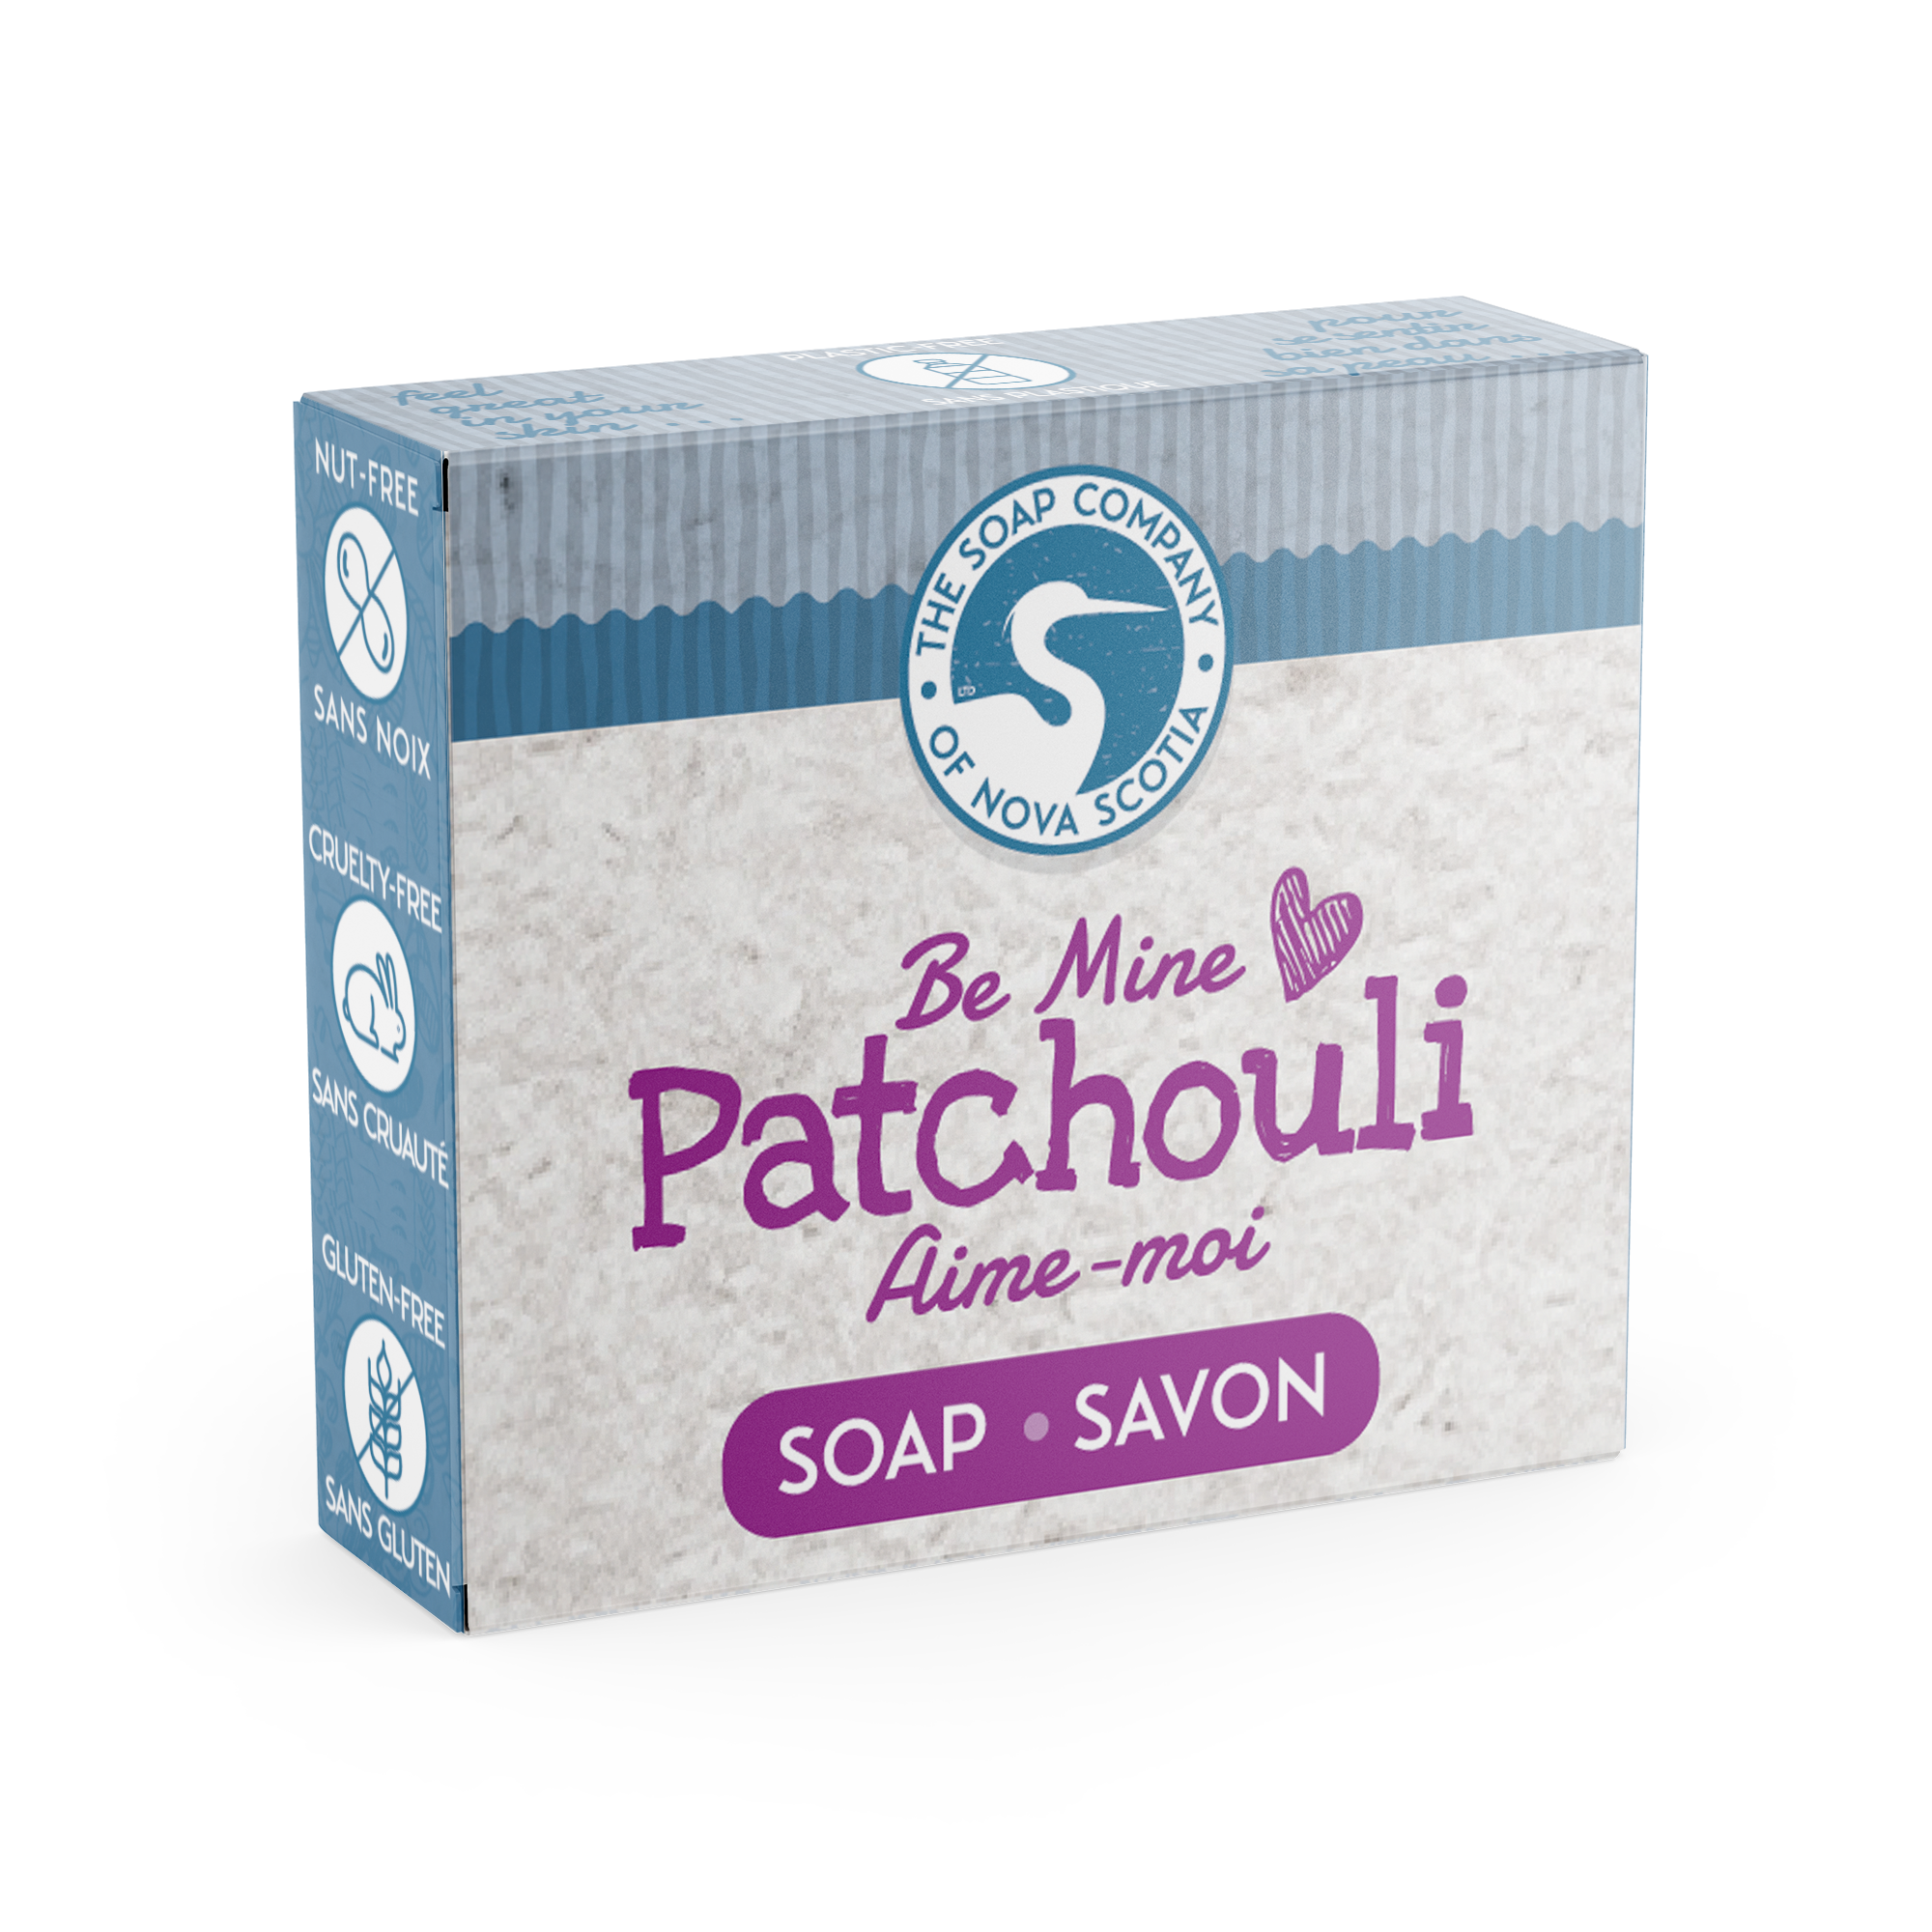 Mini ~ Patchouli Soap